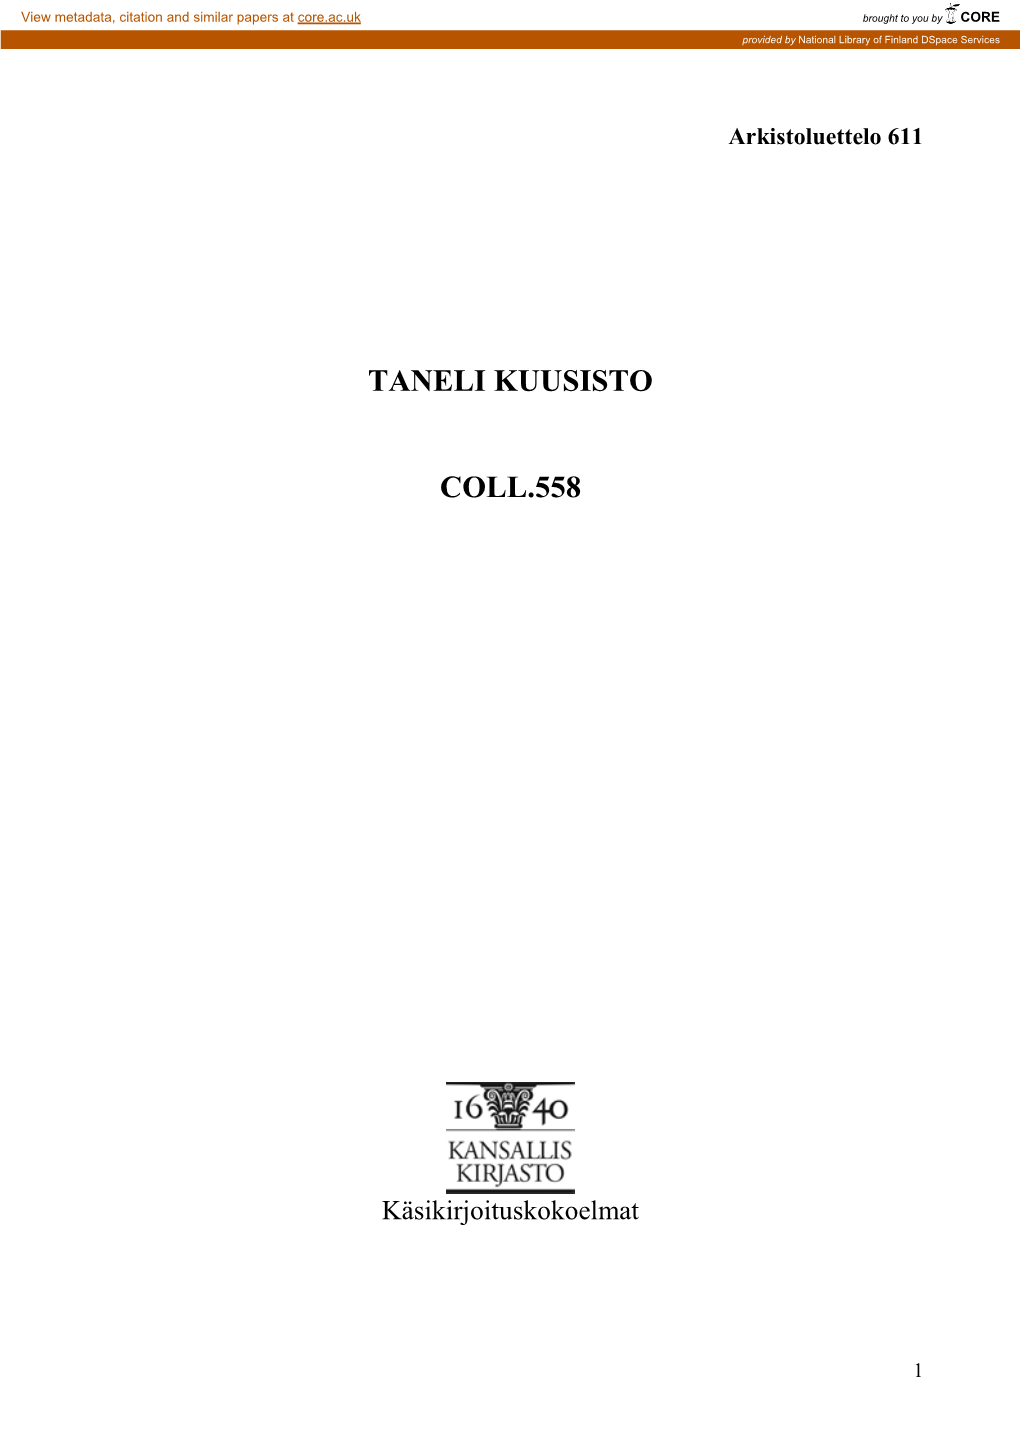 TANELI KUUSISTO, Säveltäjä (1905-1988) COLL.558